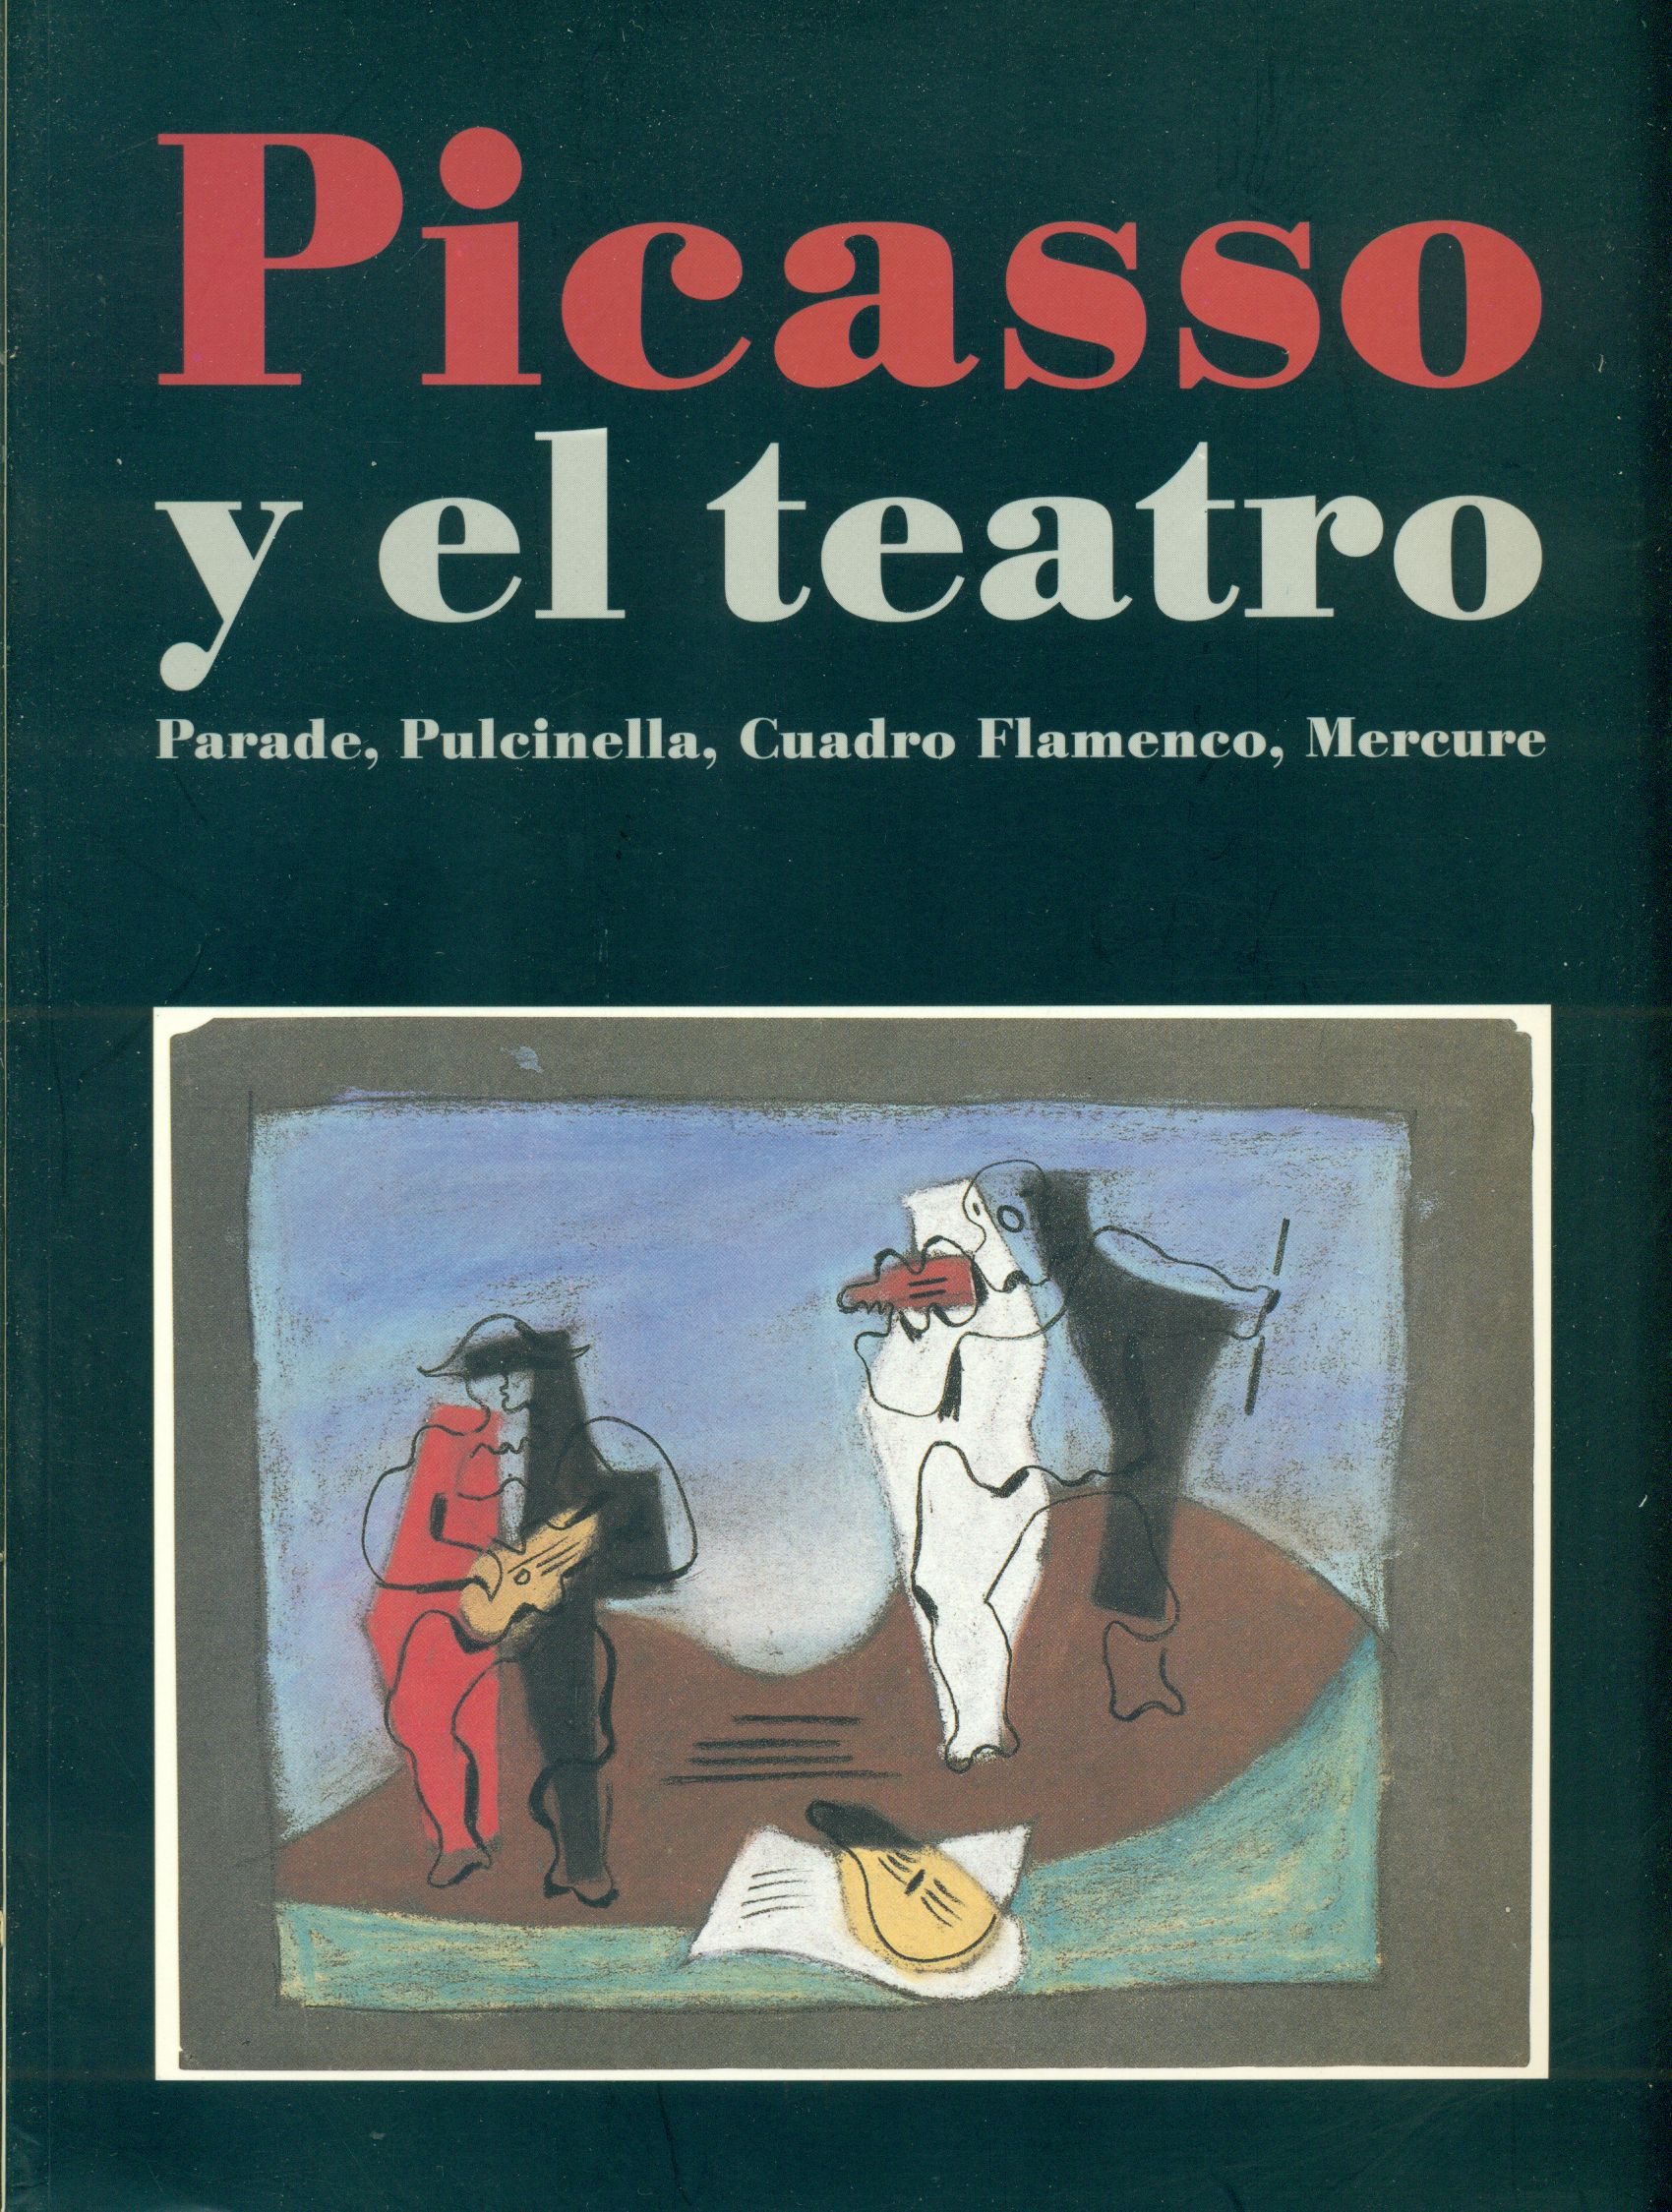 Picasso y el teatro: Parade, Pulcinella, Cuadro Flamenco, Mercure (Spanish Edition)